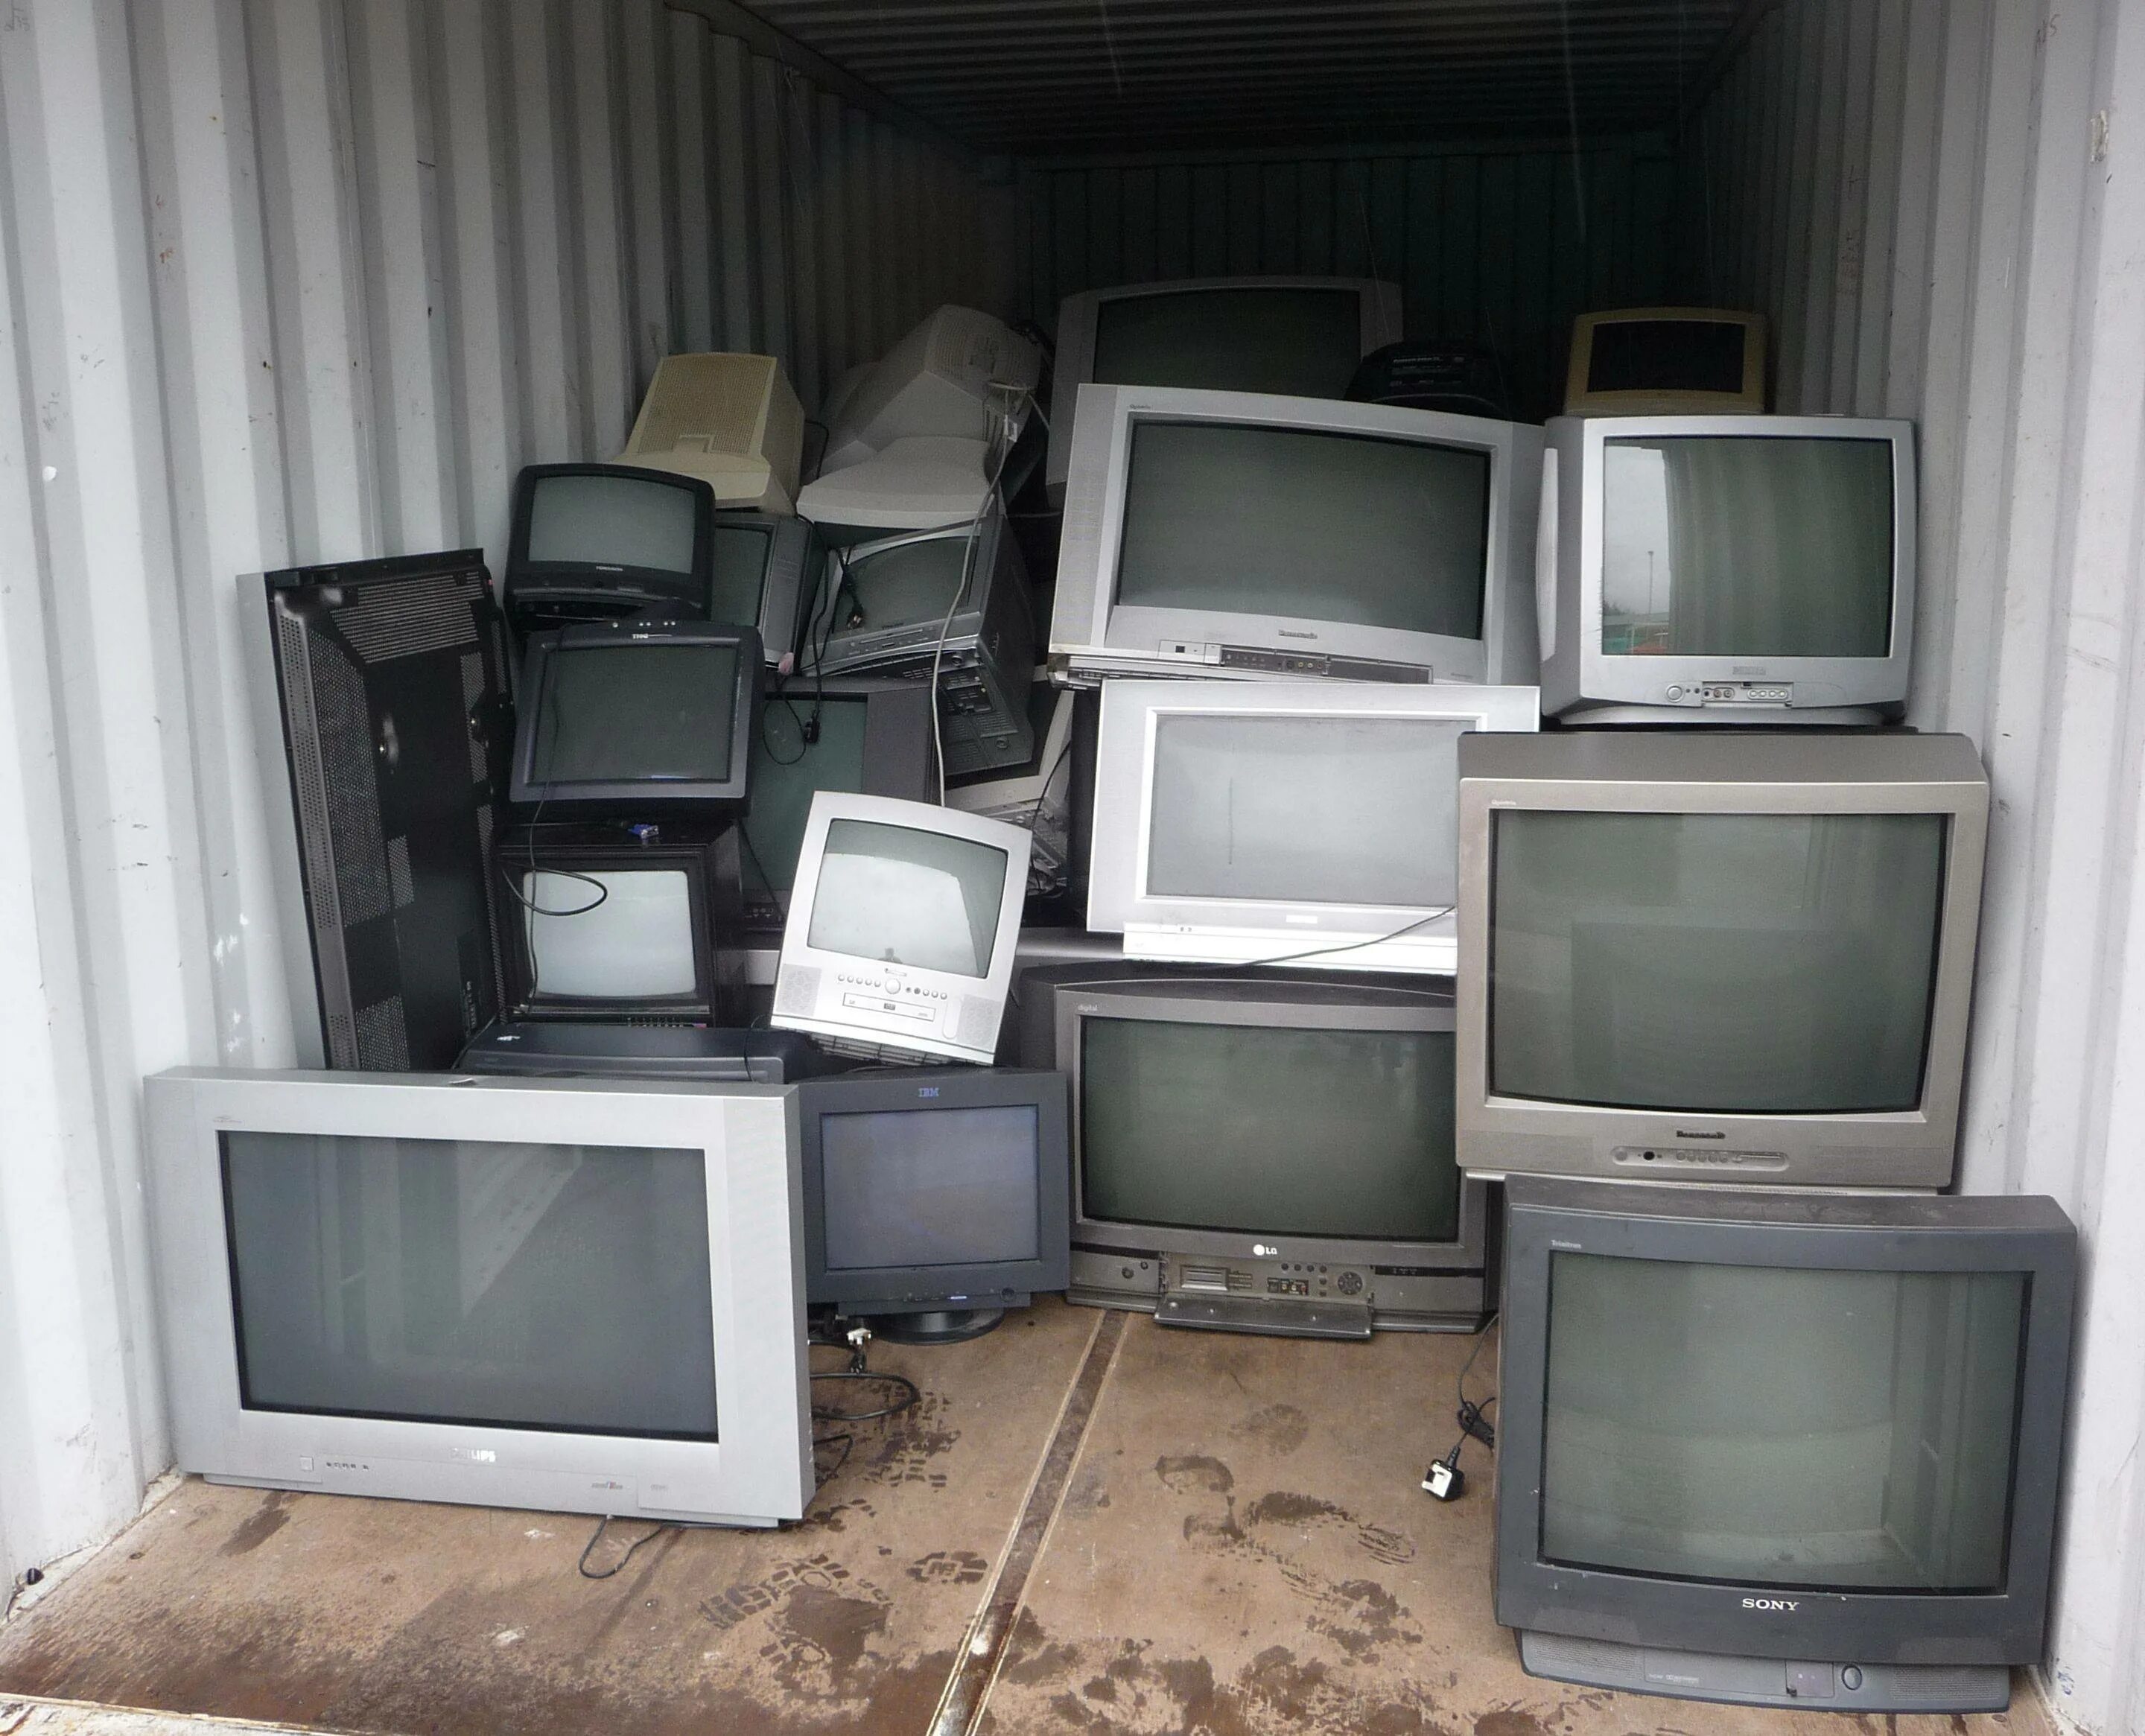 Старый телевизор. Телевизор с кинескопом. Скупают старые телевизоры. Старый кинескопный телевизор.